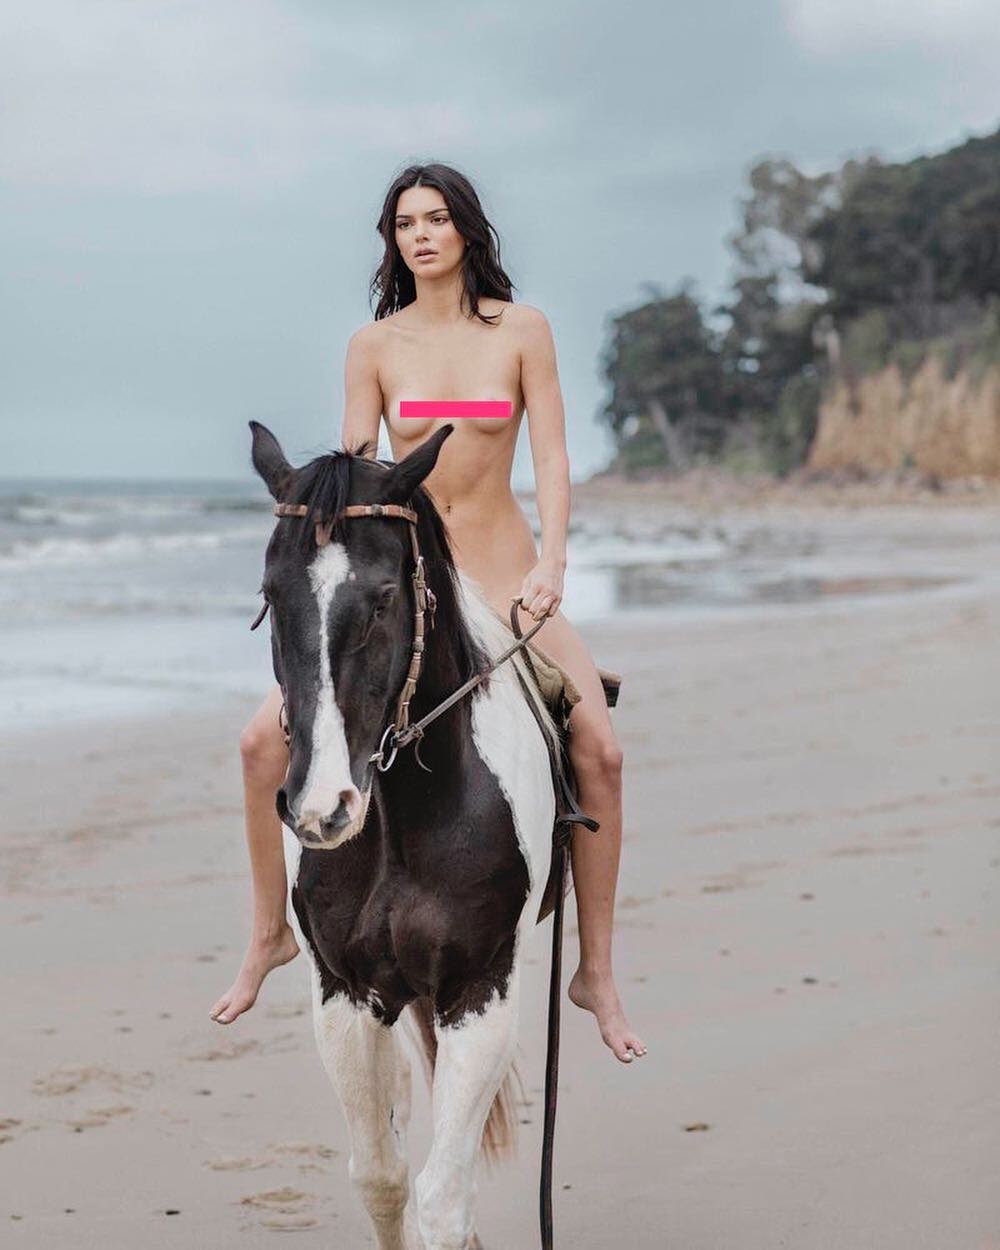 Слили интимные фото голой Кендалл Дженнер на пляже на коне - фото 147007